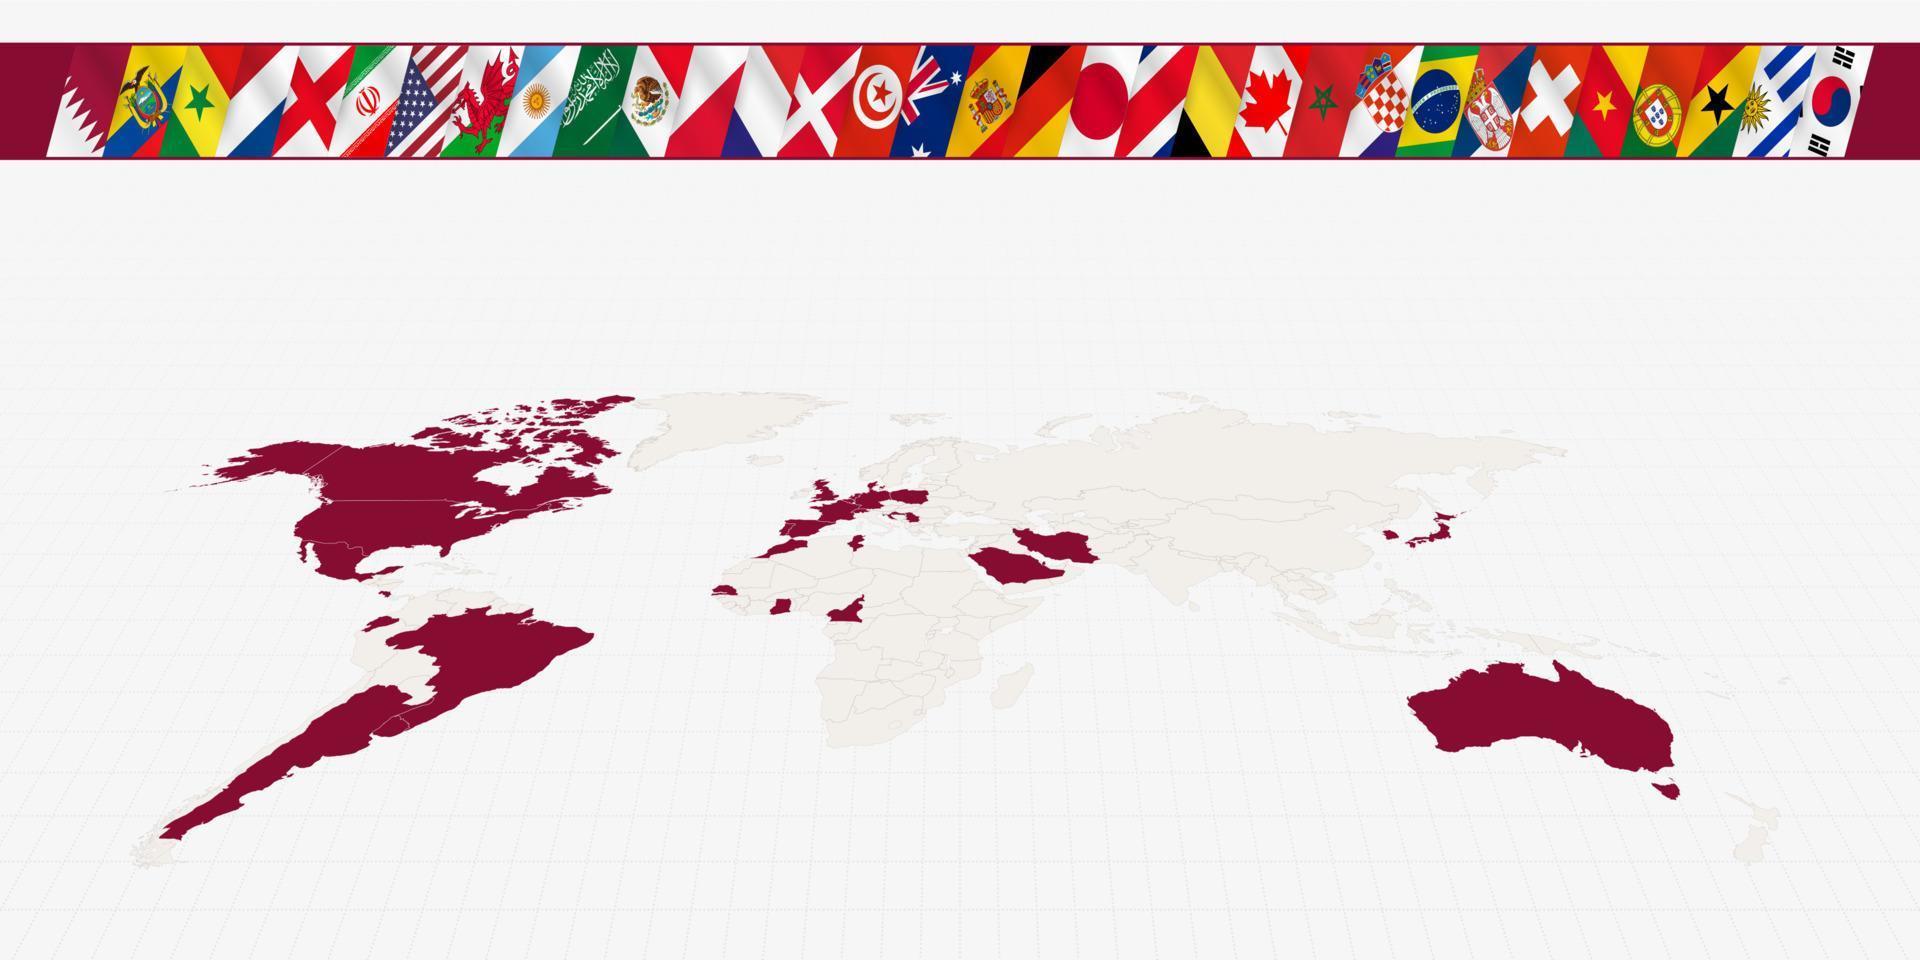 mapa do mundo com os participantes de competições internacionais de futebol destacados no mapa. uma coleção de bandeiras. vetor